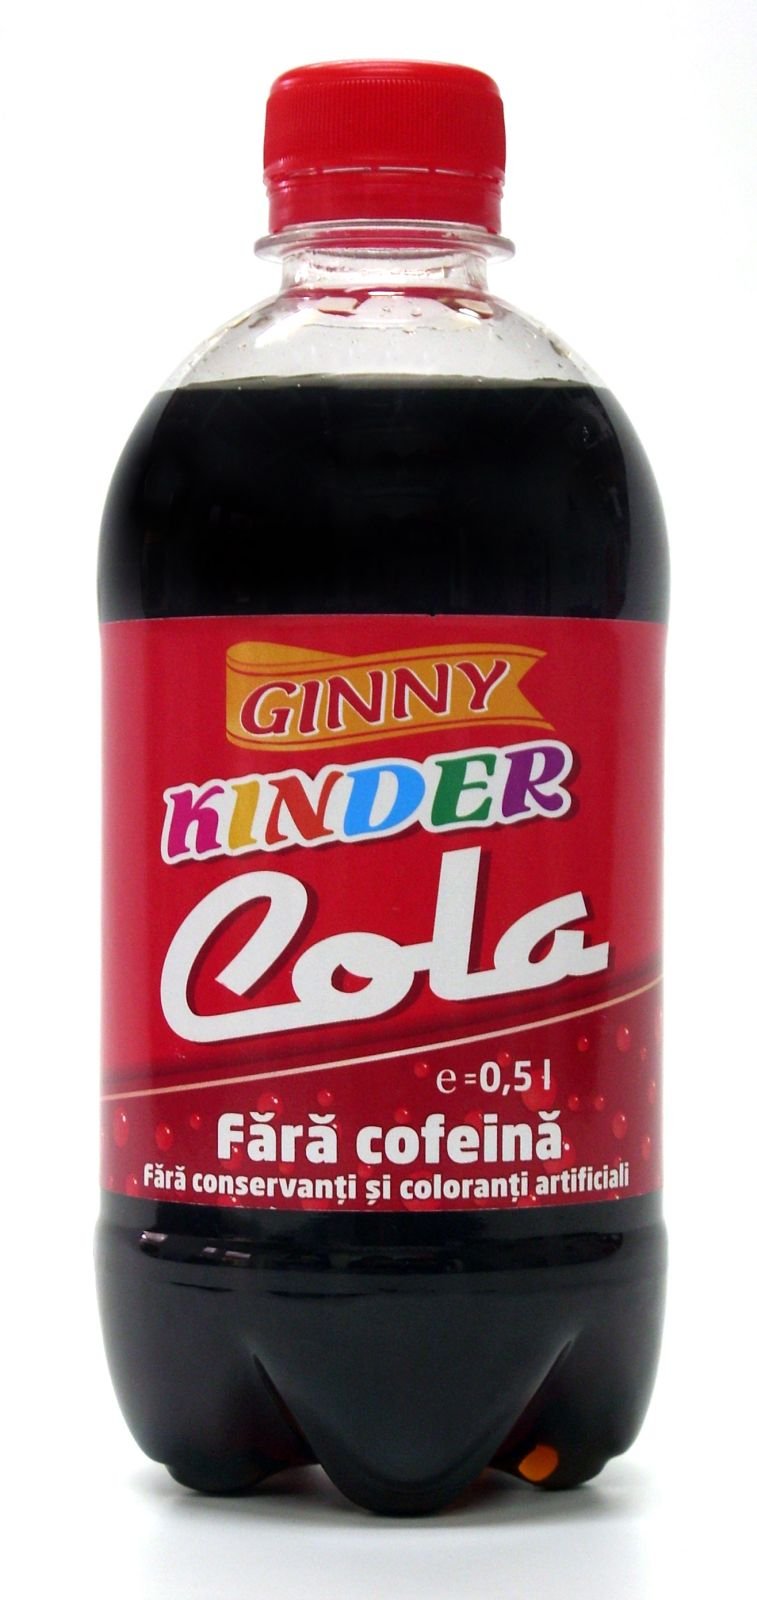 Kinder Cola